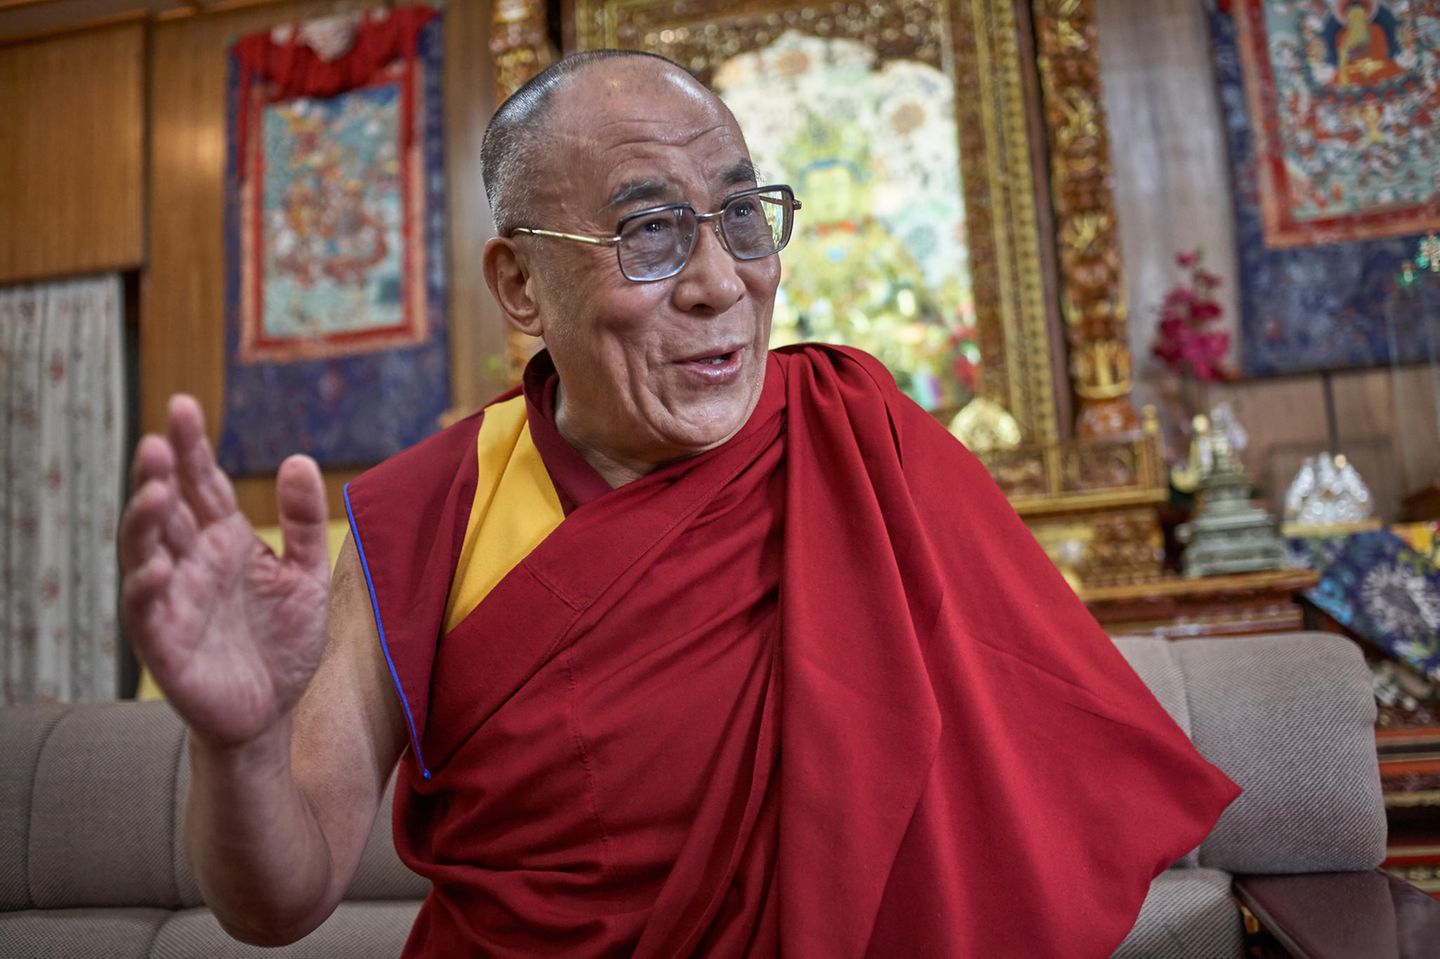 Weise Worte Die 22 Schonsten Zitate Des Dalai Lama Brigitte De